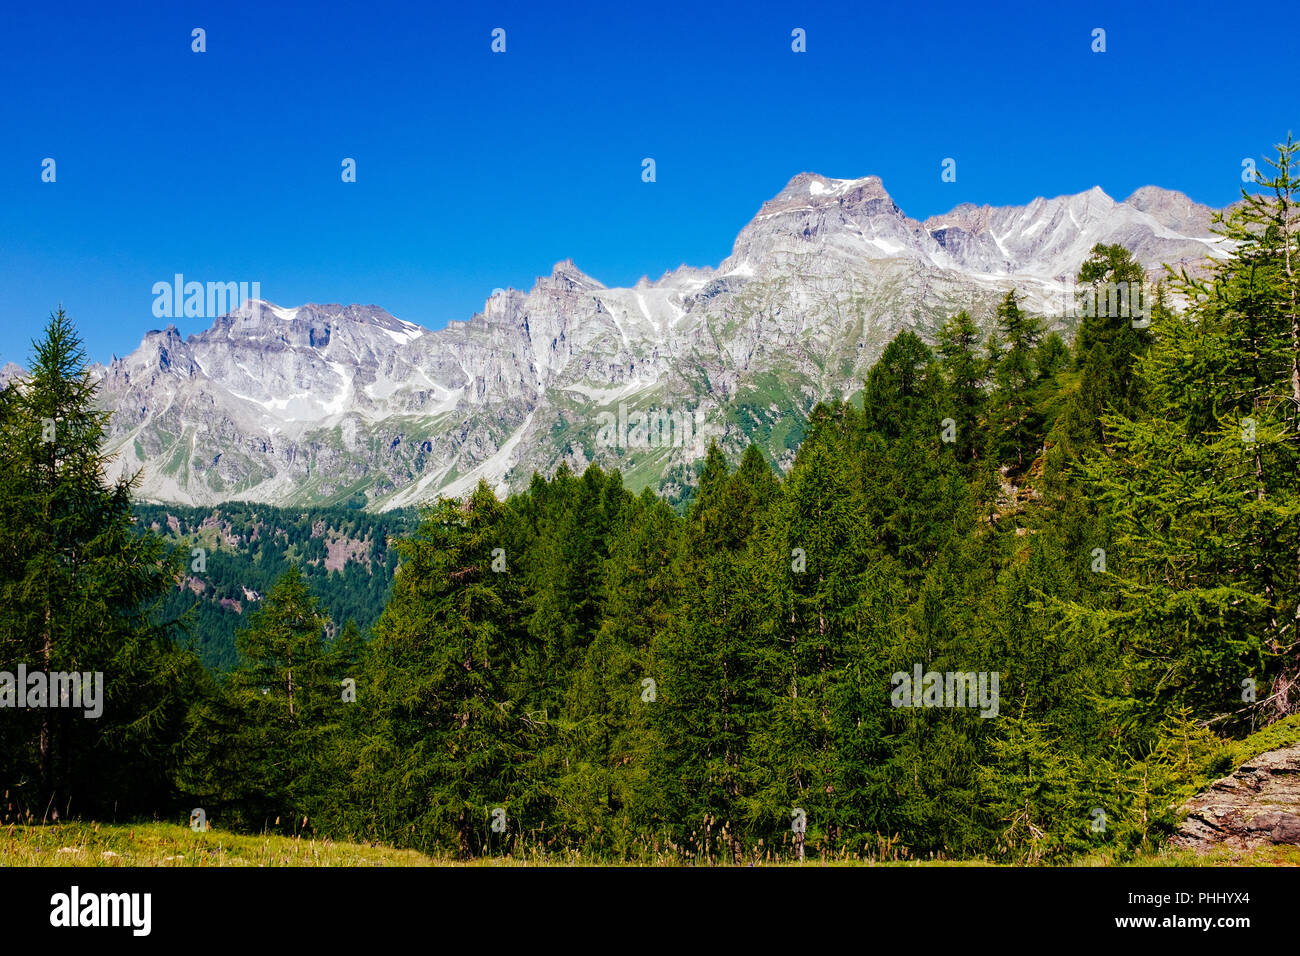 Magnifique paysage de montagne, l'Alpe Devero, Italie Banque D'Images